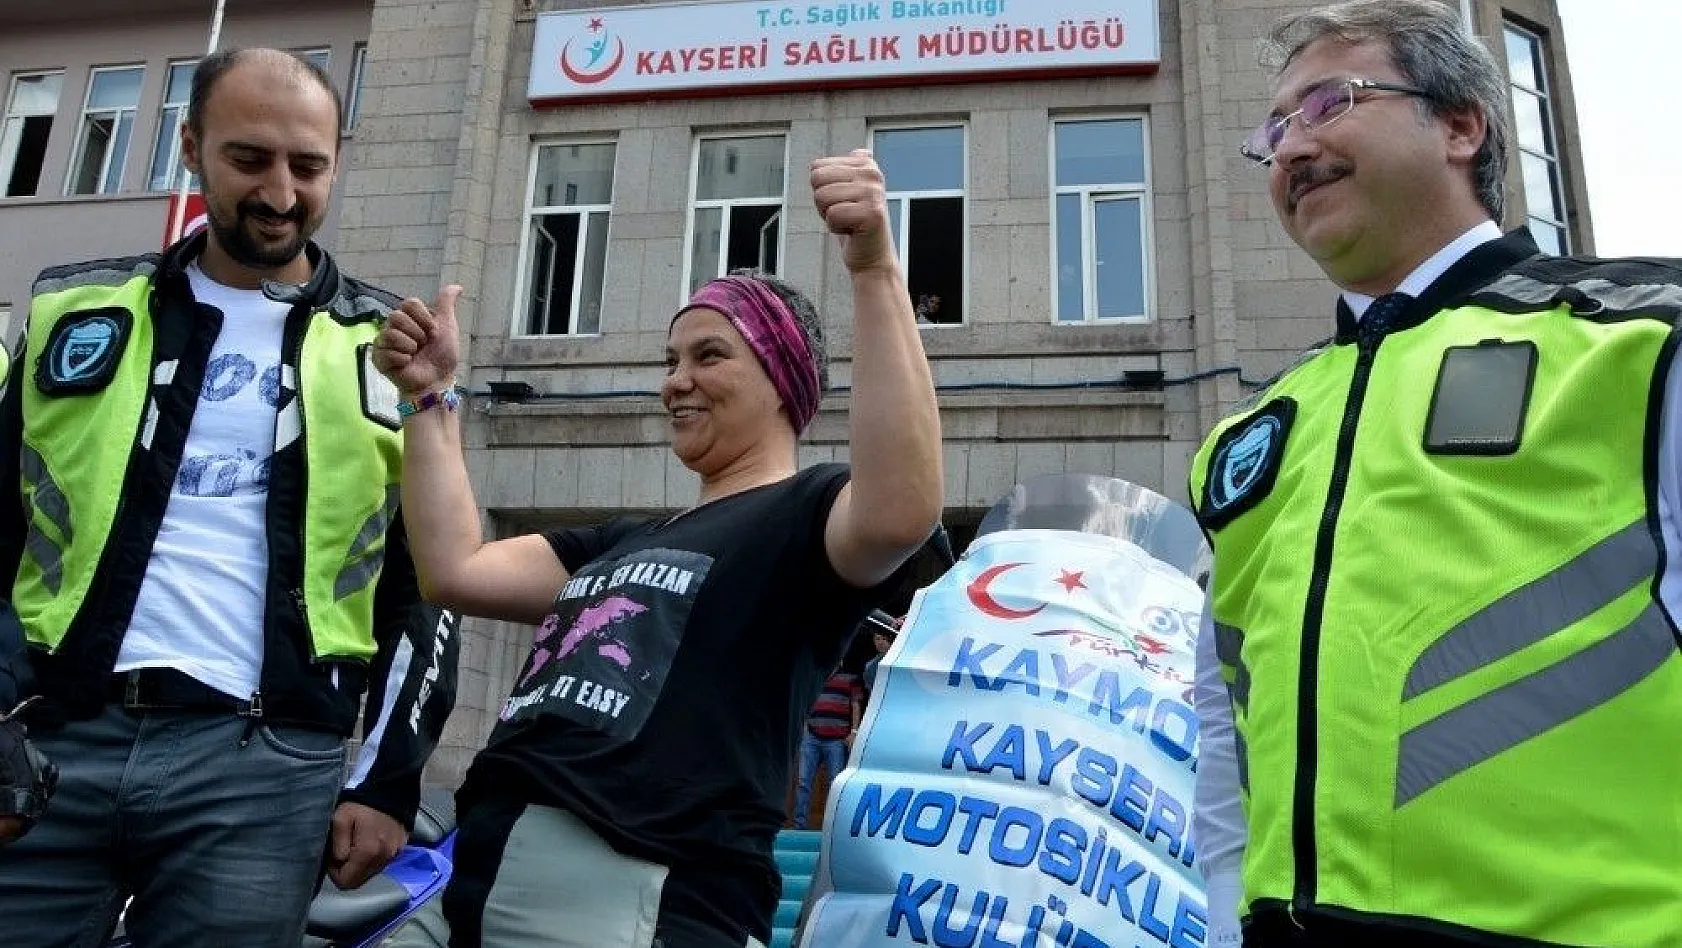 55 ülkeyi dolaşan gezgin, Meme Kanseri Farkındalığı için Türkiye'yi dolaşıyor
